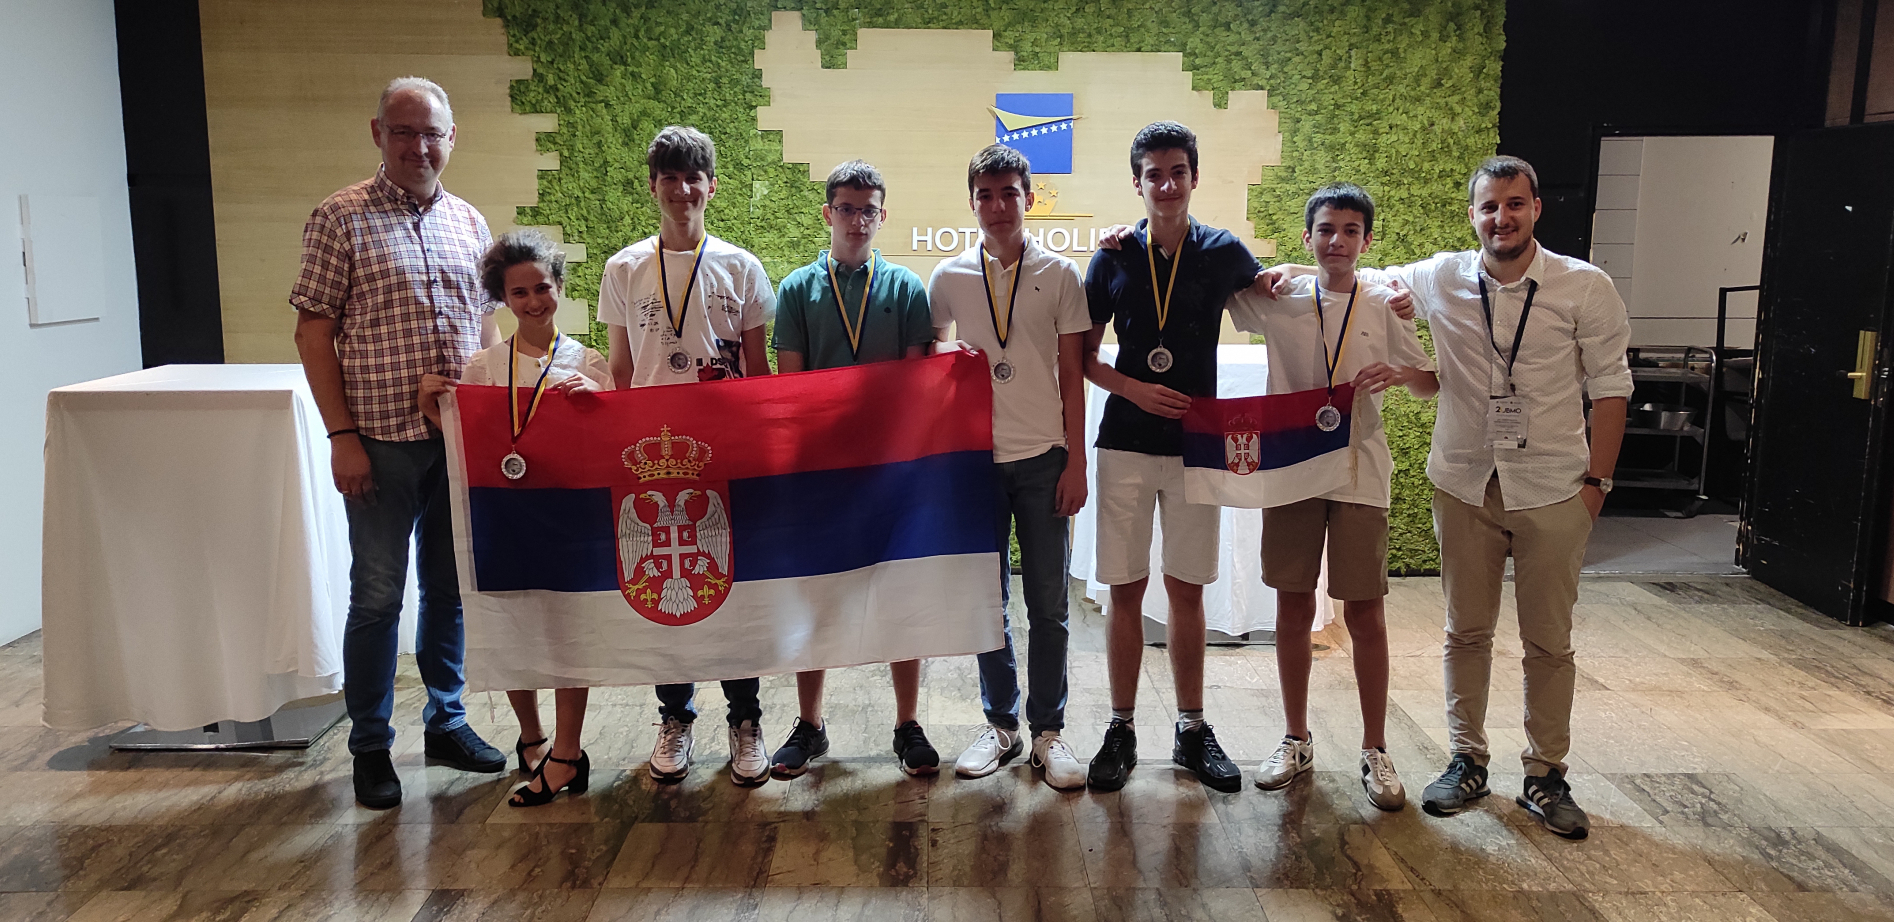 Šest medalja za ekipu Srbije na Juniorskoj balkanskoj matematičkoj olimpijadi